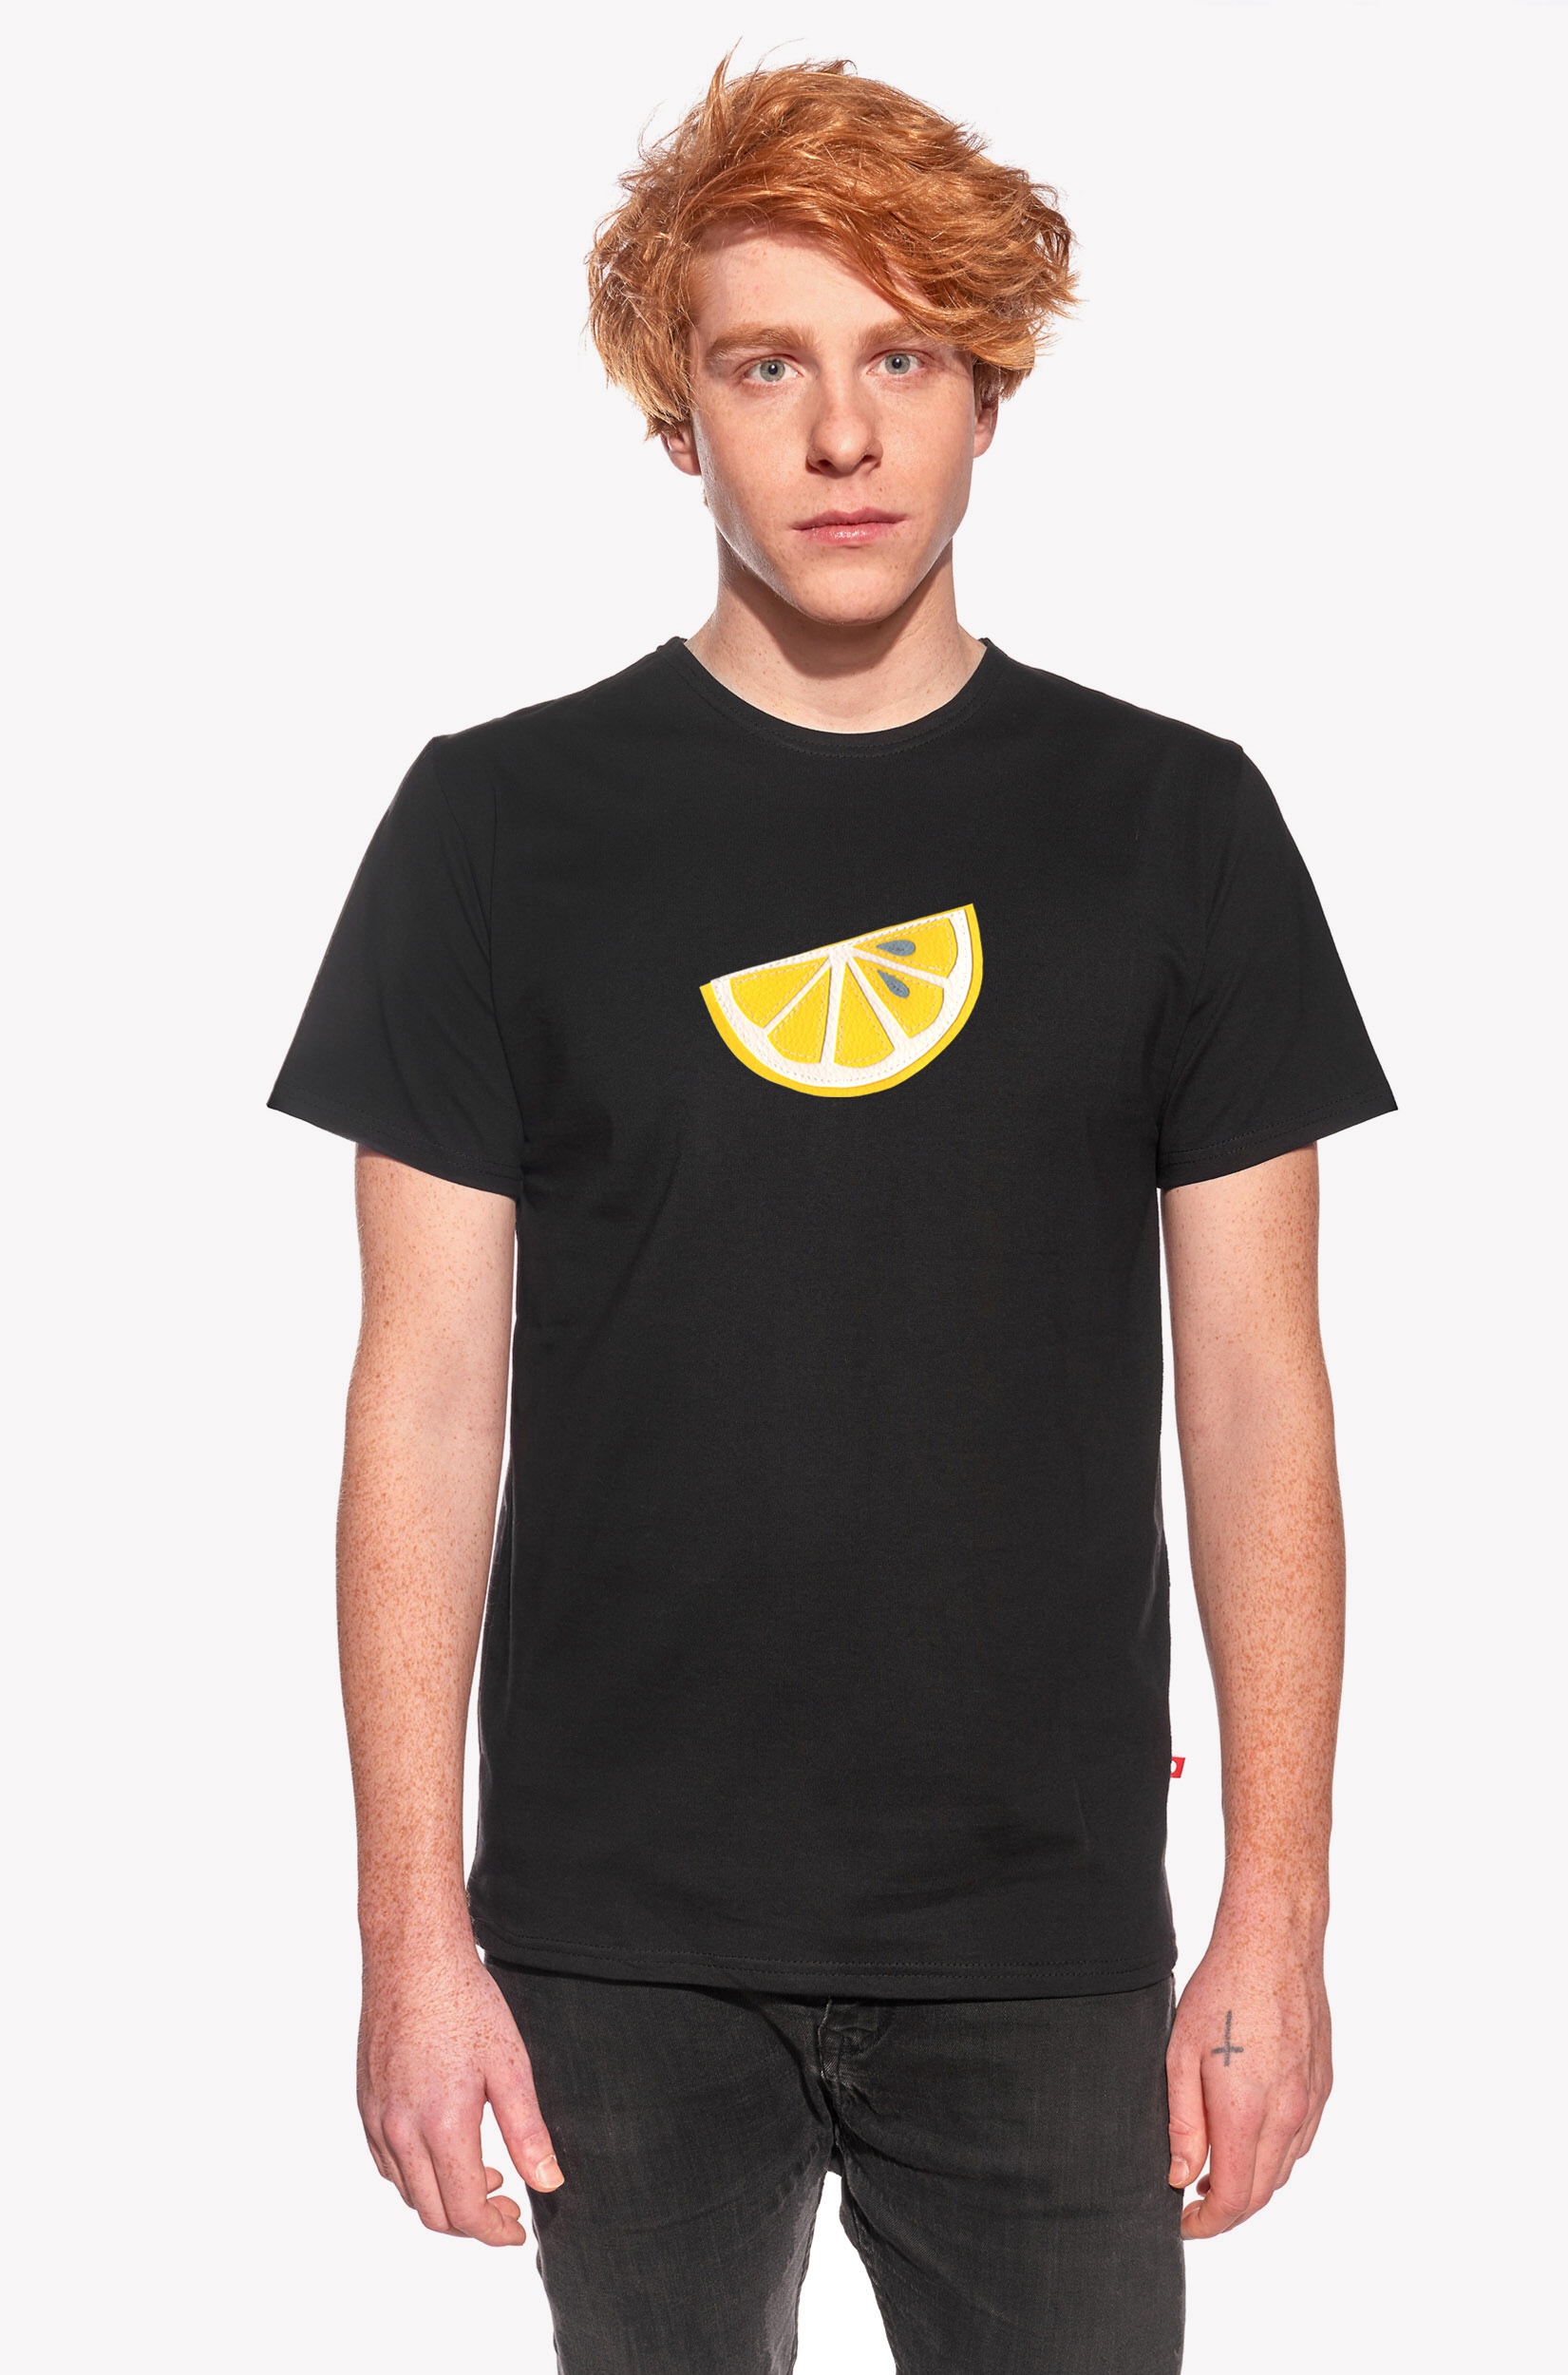 Pólók citrommal